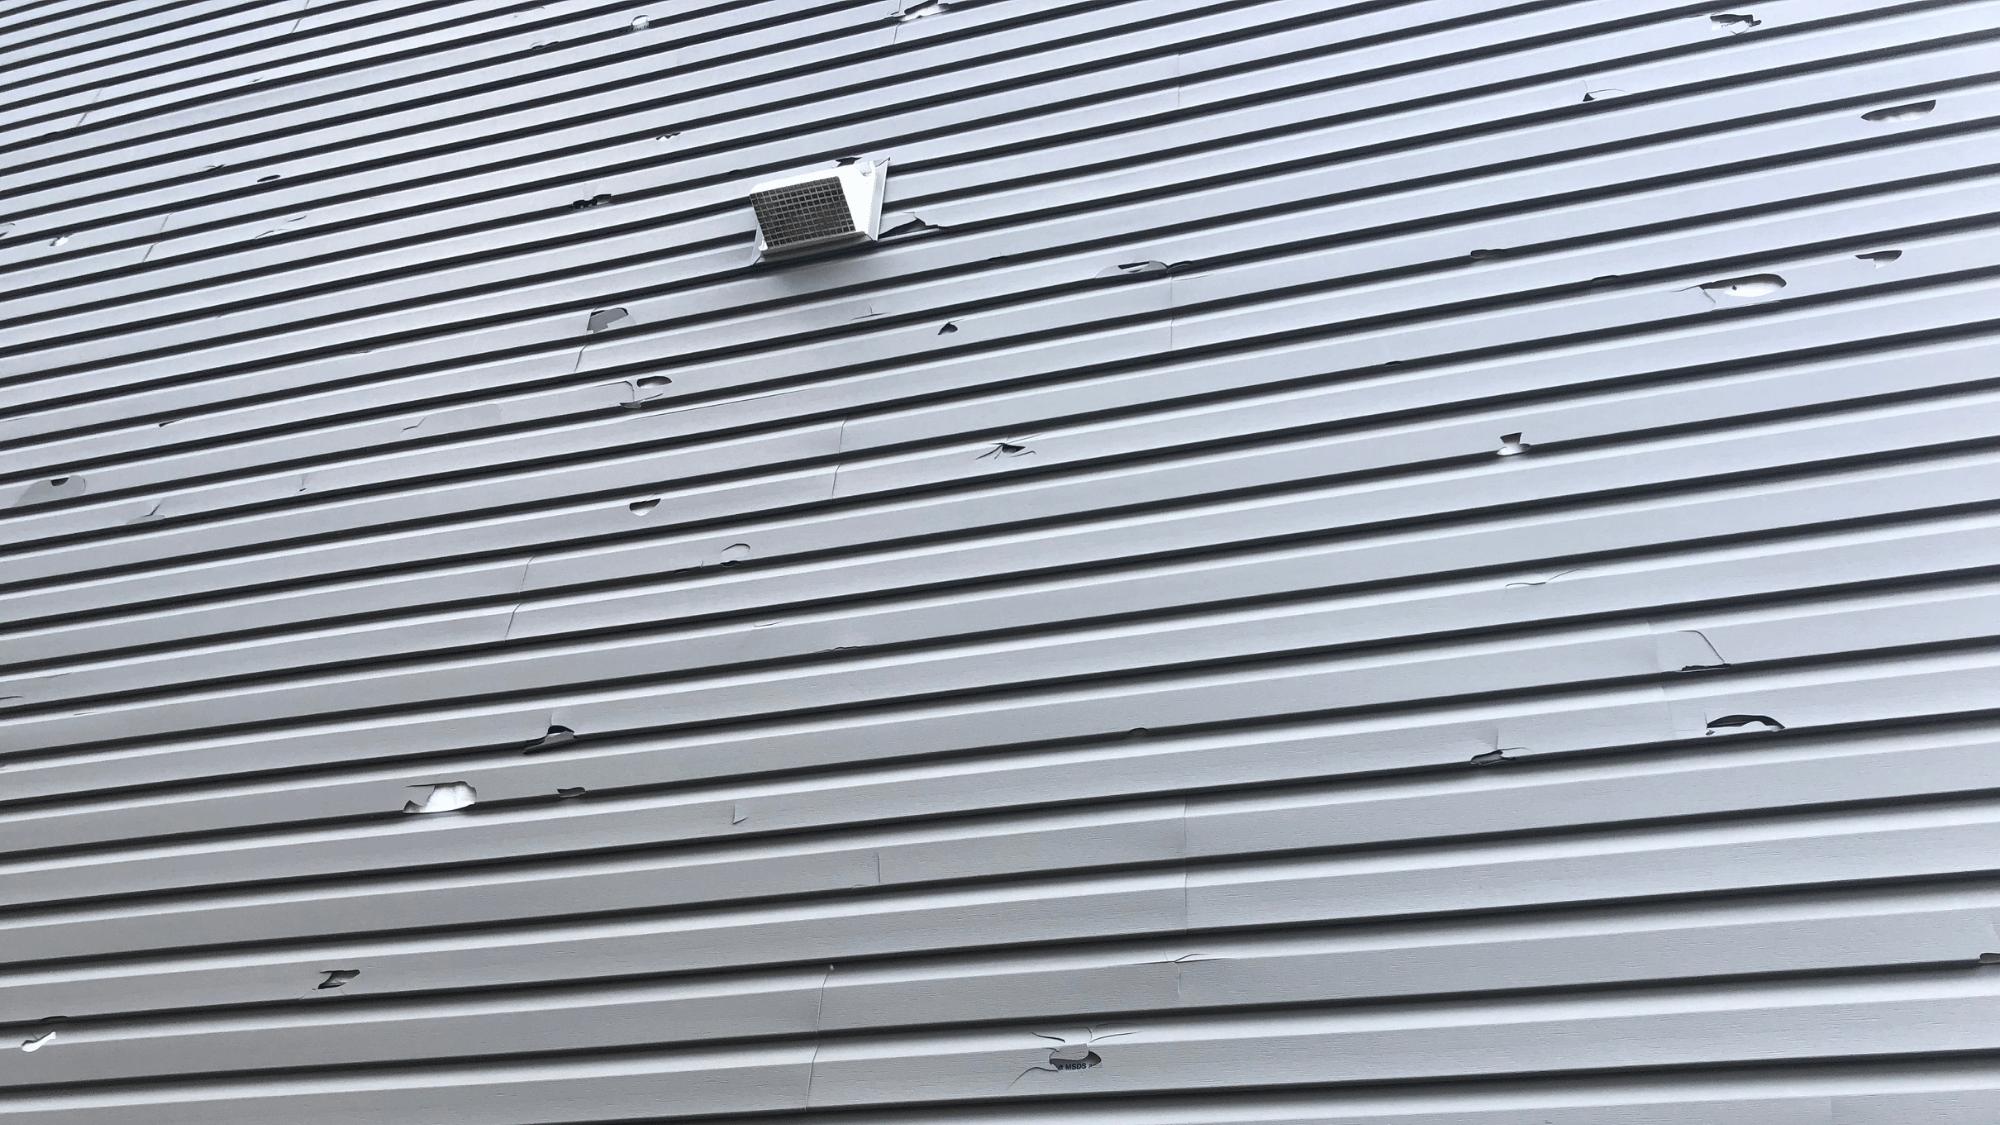 Strasburg Roof Damage - Hail Damage